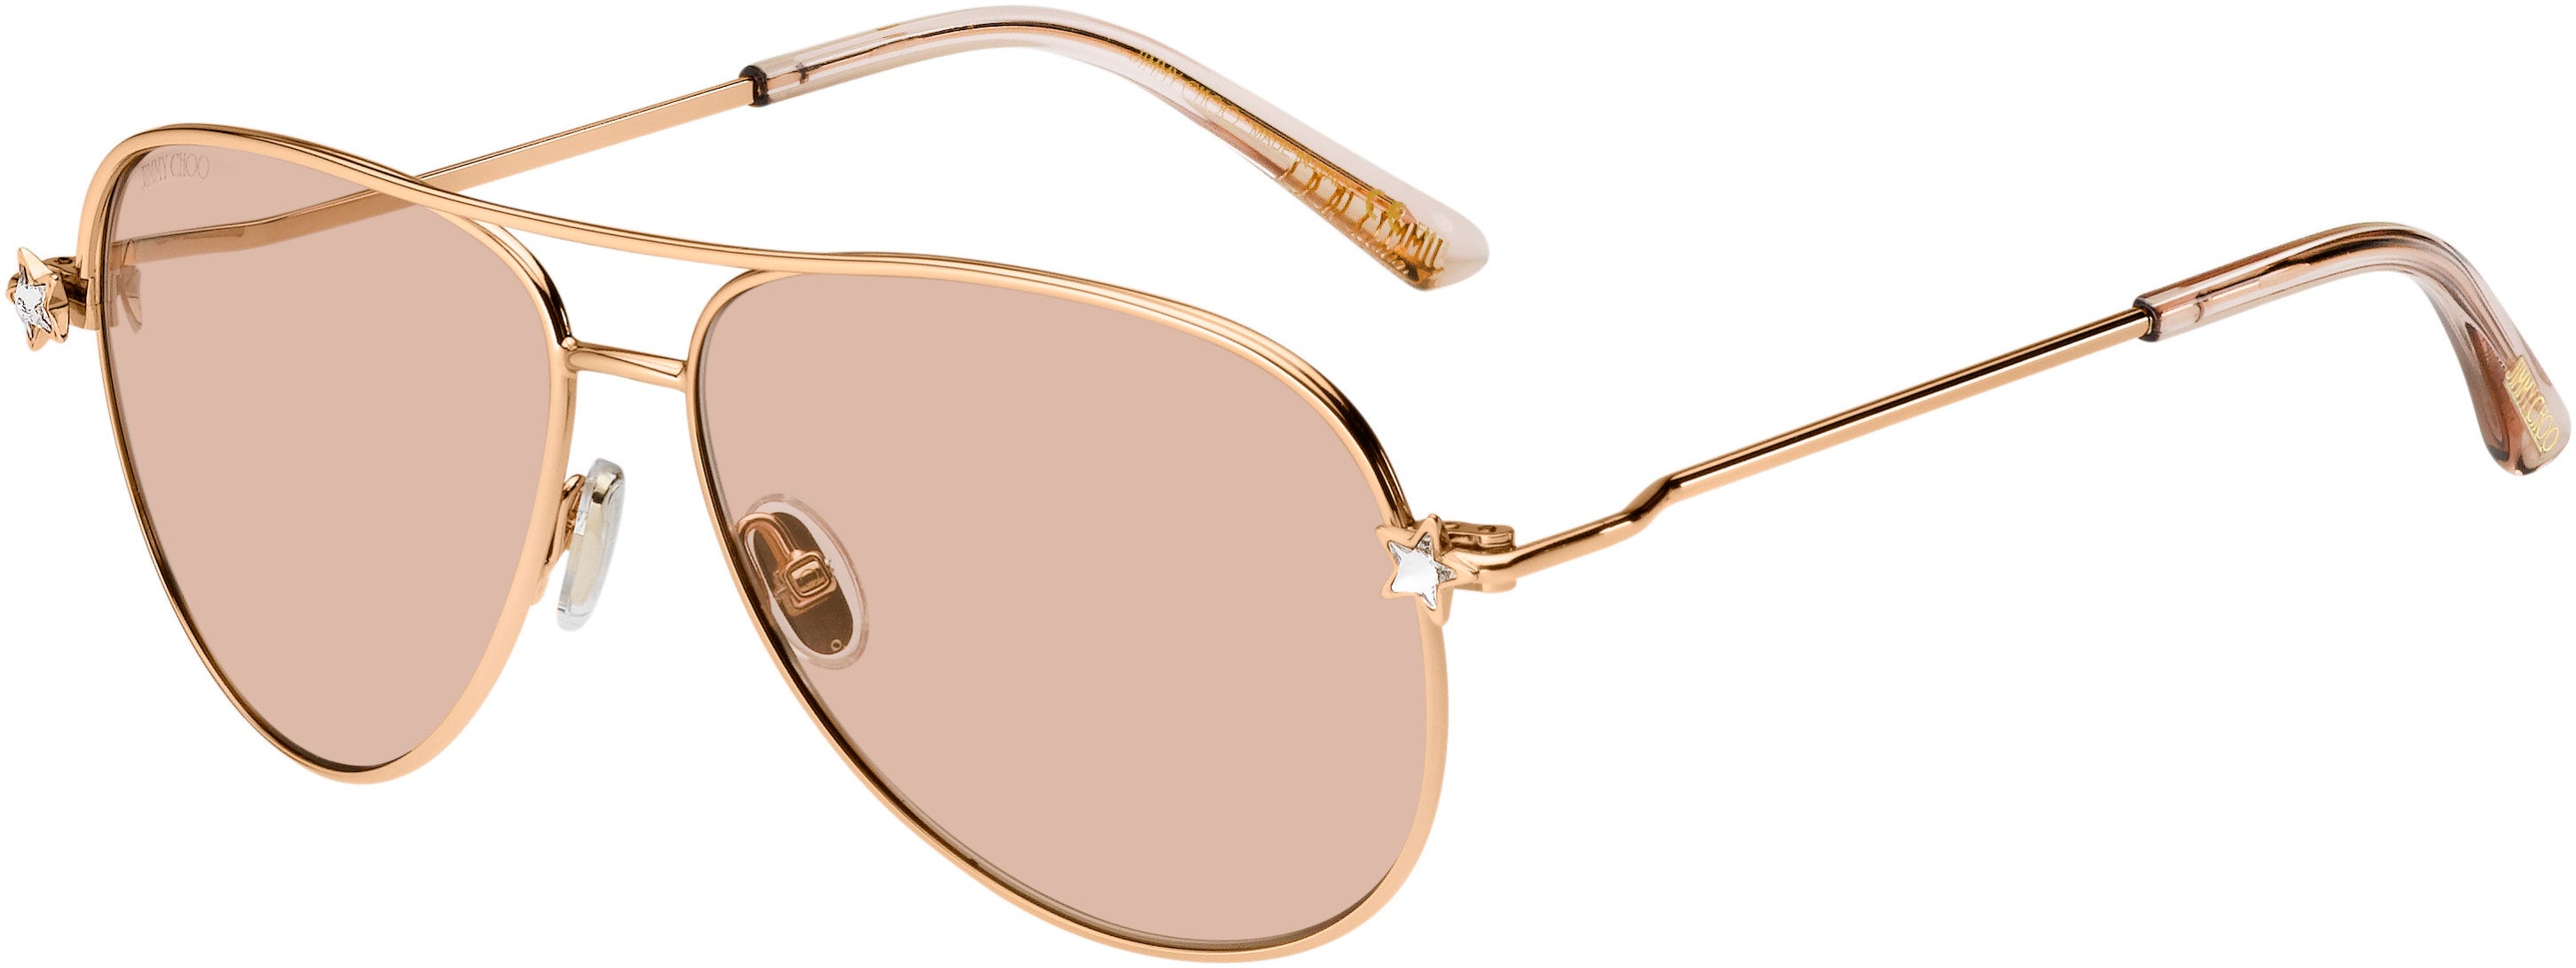 Jimmy Choo Sansa/S Aviator Sunglasses 0DDB-0DDB  Gold Copper (K1 Gold Mirror)